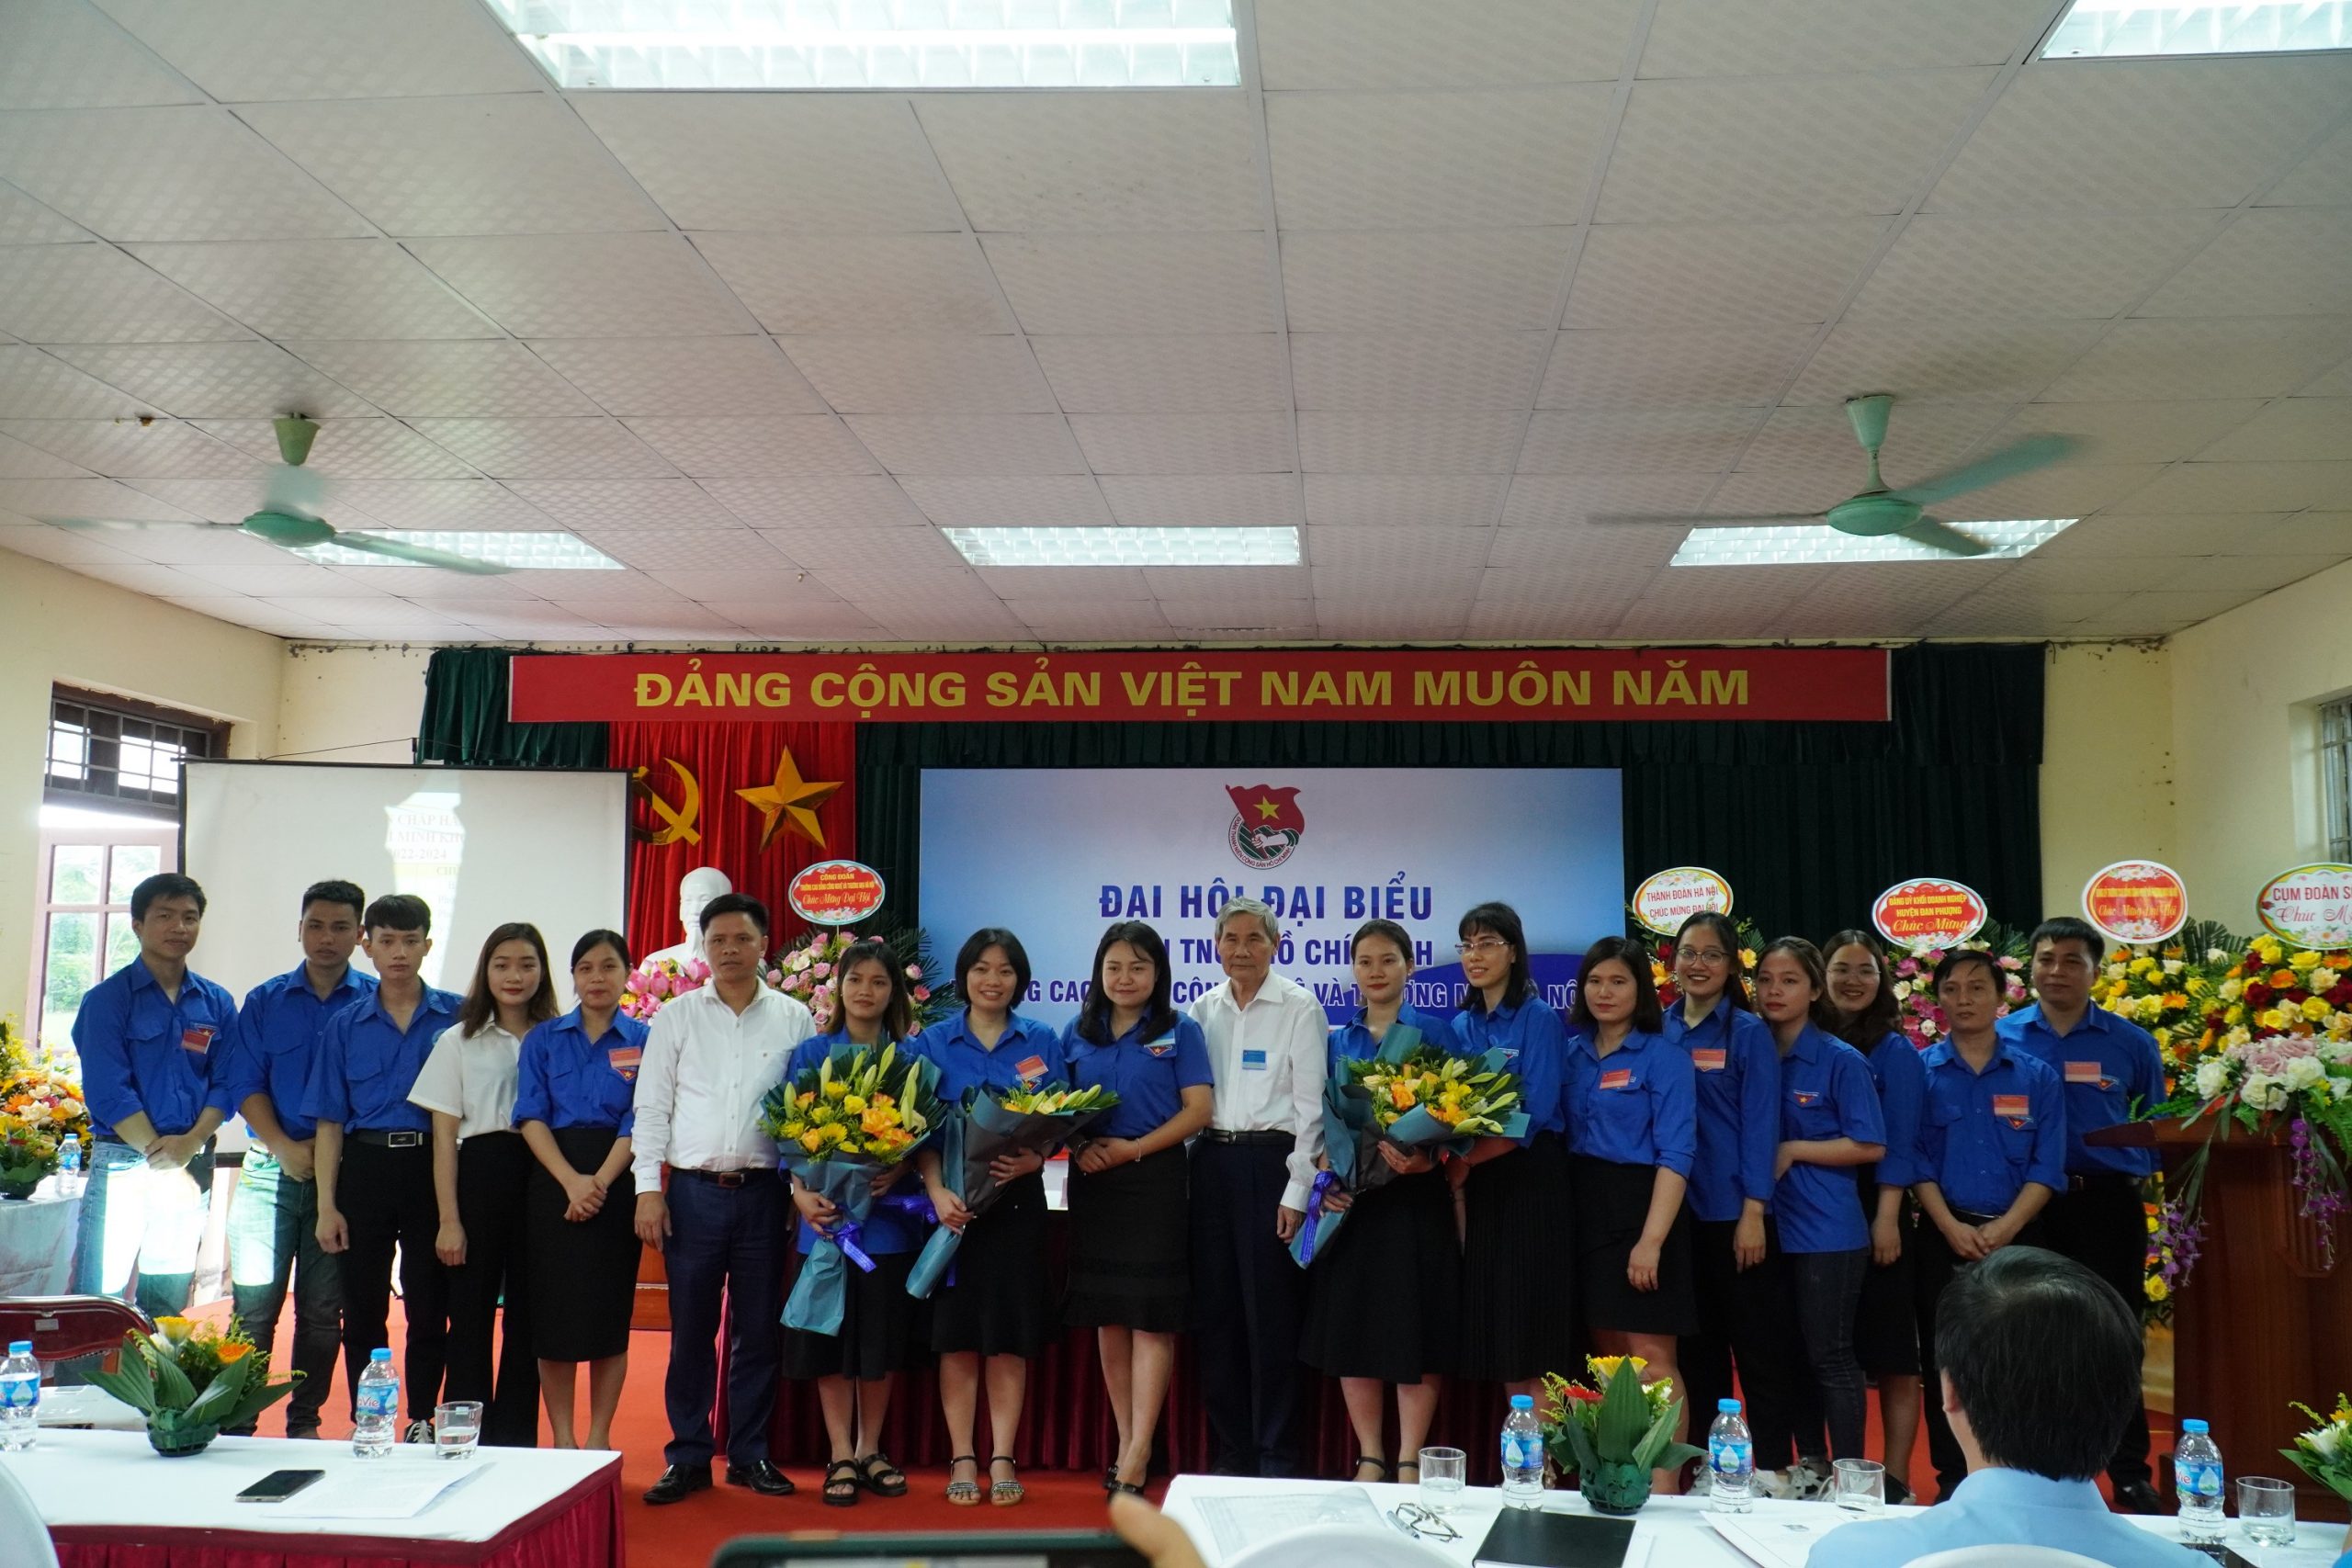 Đại hội đại biểu Đoàn TNCS Hồ Chí Minh lần thứ 6 – nhiệm kỳ 2022 – 2024